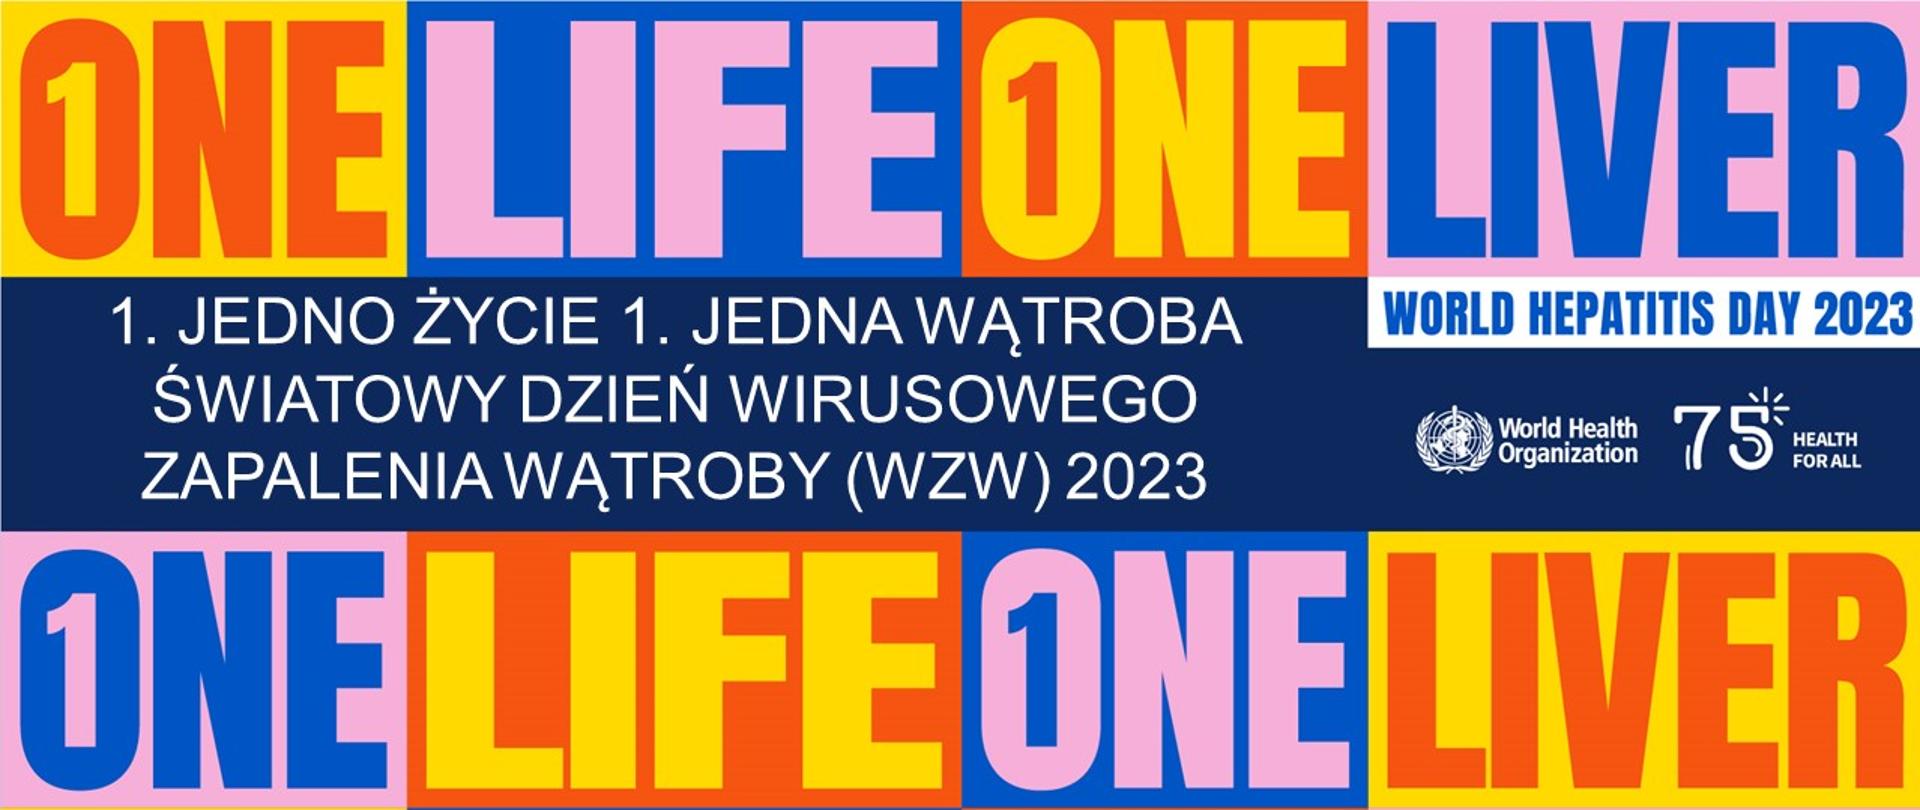 prostokąt, który zawiera mniejsze prostokątne, kolorowe kafelki z napisanymi słowami w języku angielskim, w polskim tłumaczeniu hasła jedno życie jedna wątroba, logotyp Światowej Organizacji Zdrowia